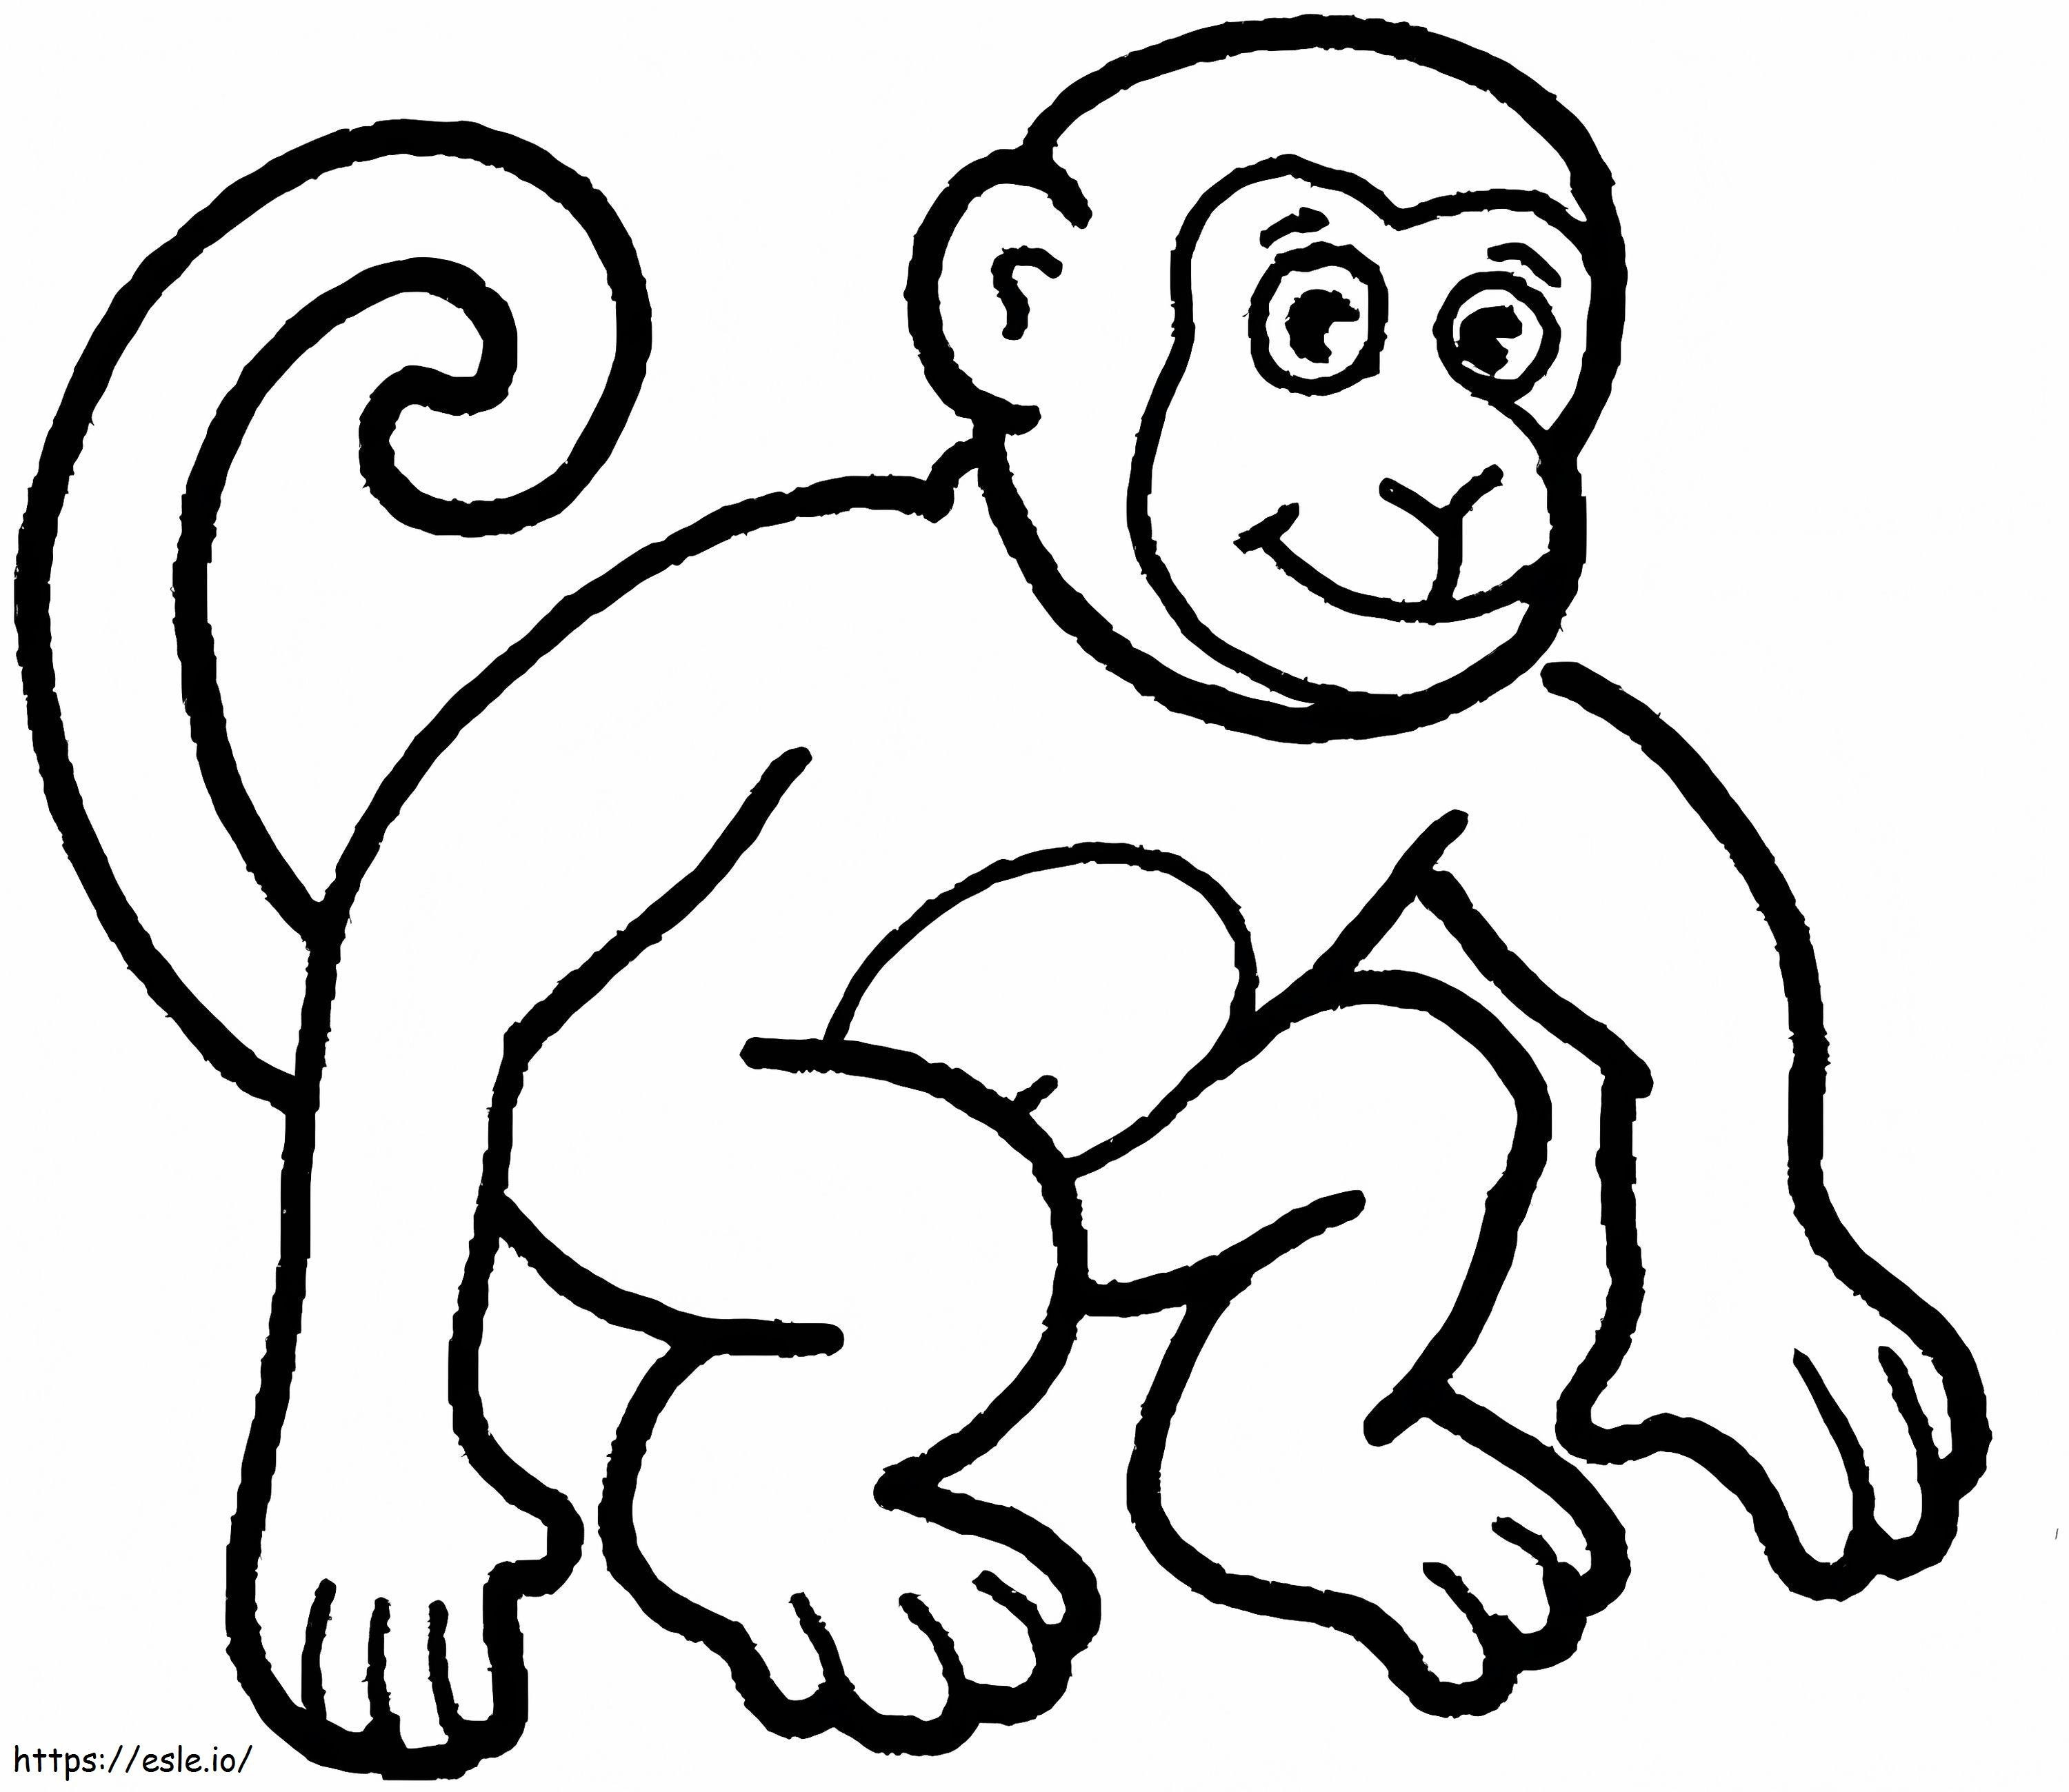 O maimuta de colorat